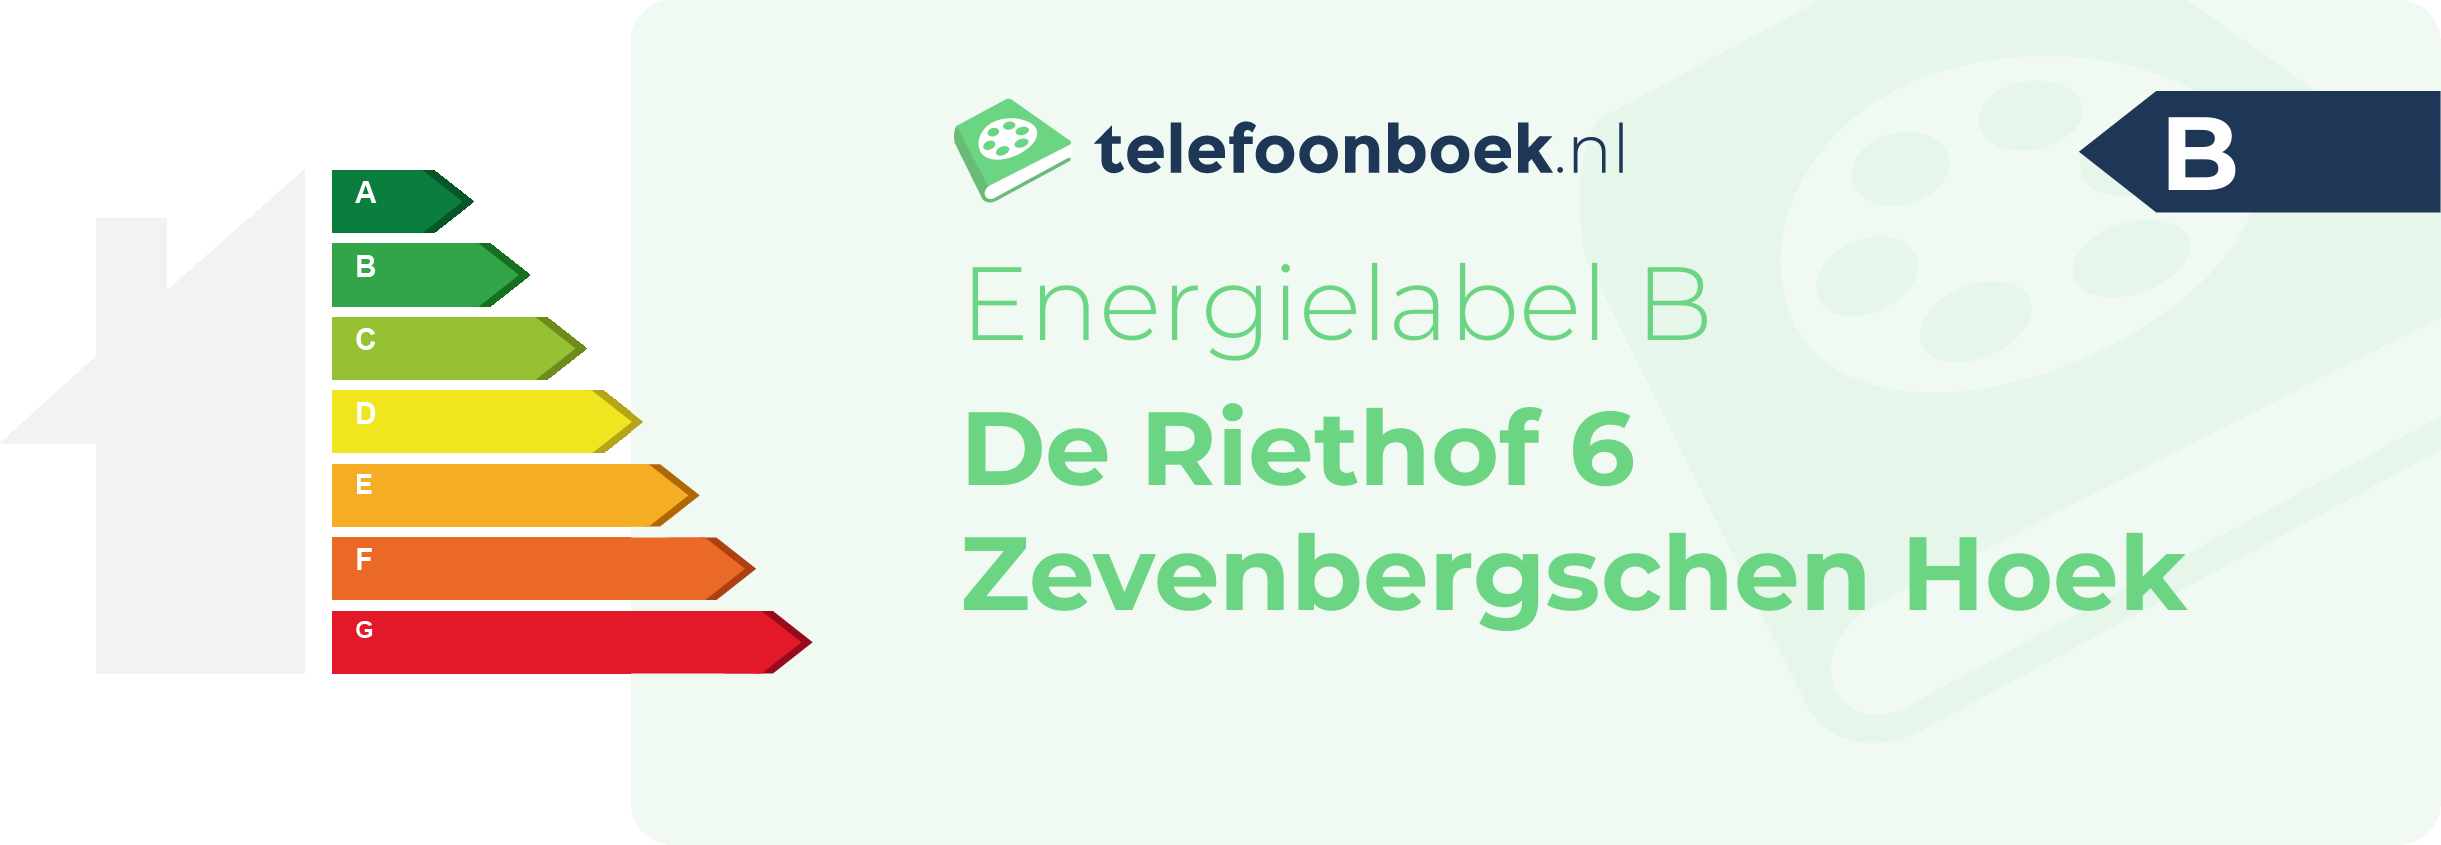 Energielabel De Riethof 6 Zevenbergschen Hoek